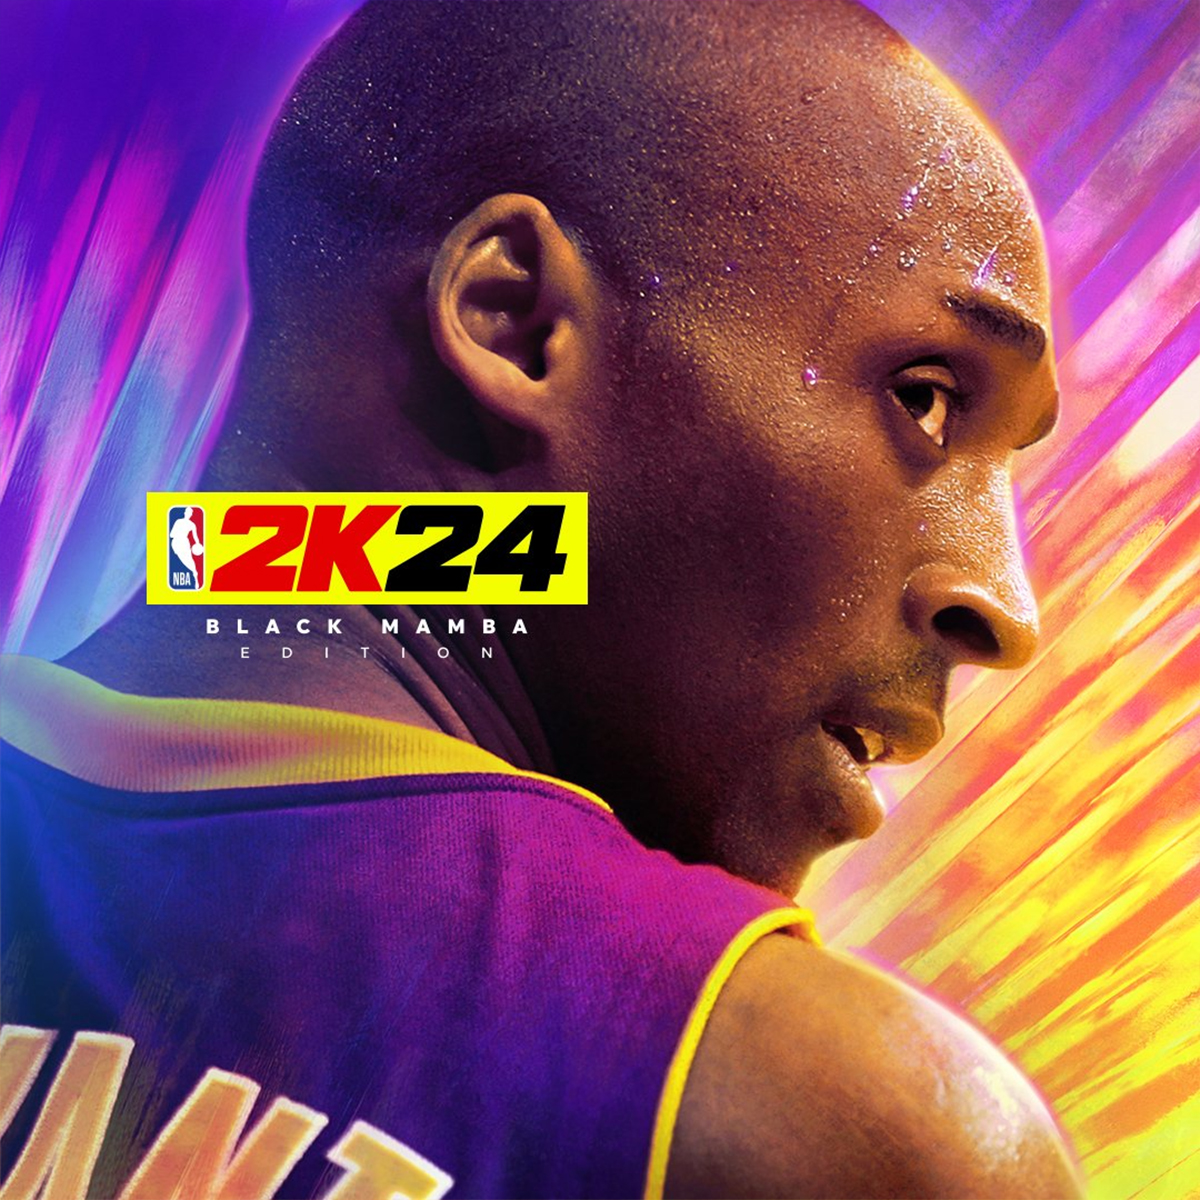 NBA 2K24 Cover Honors Late Legend Kobe Bryant